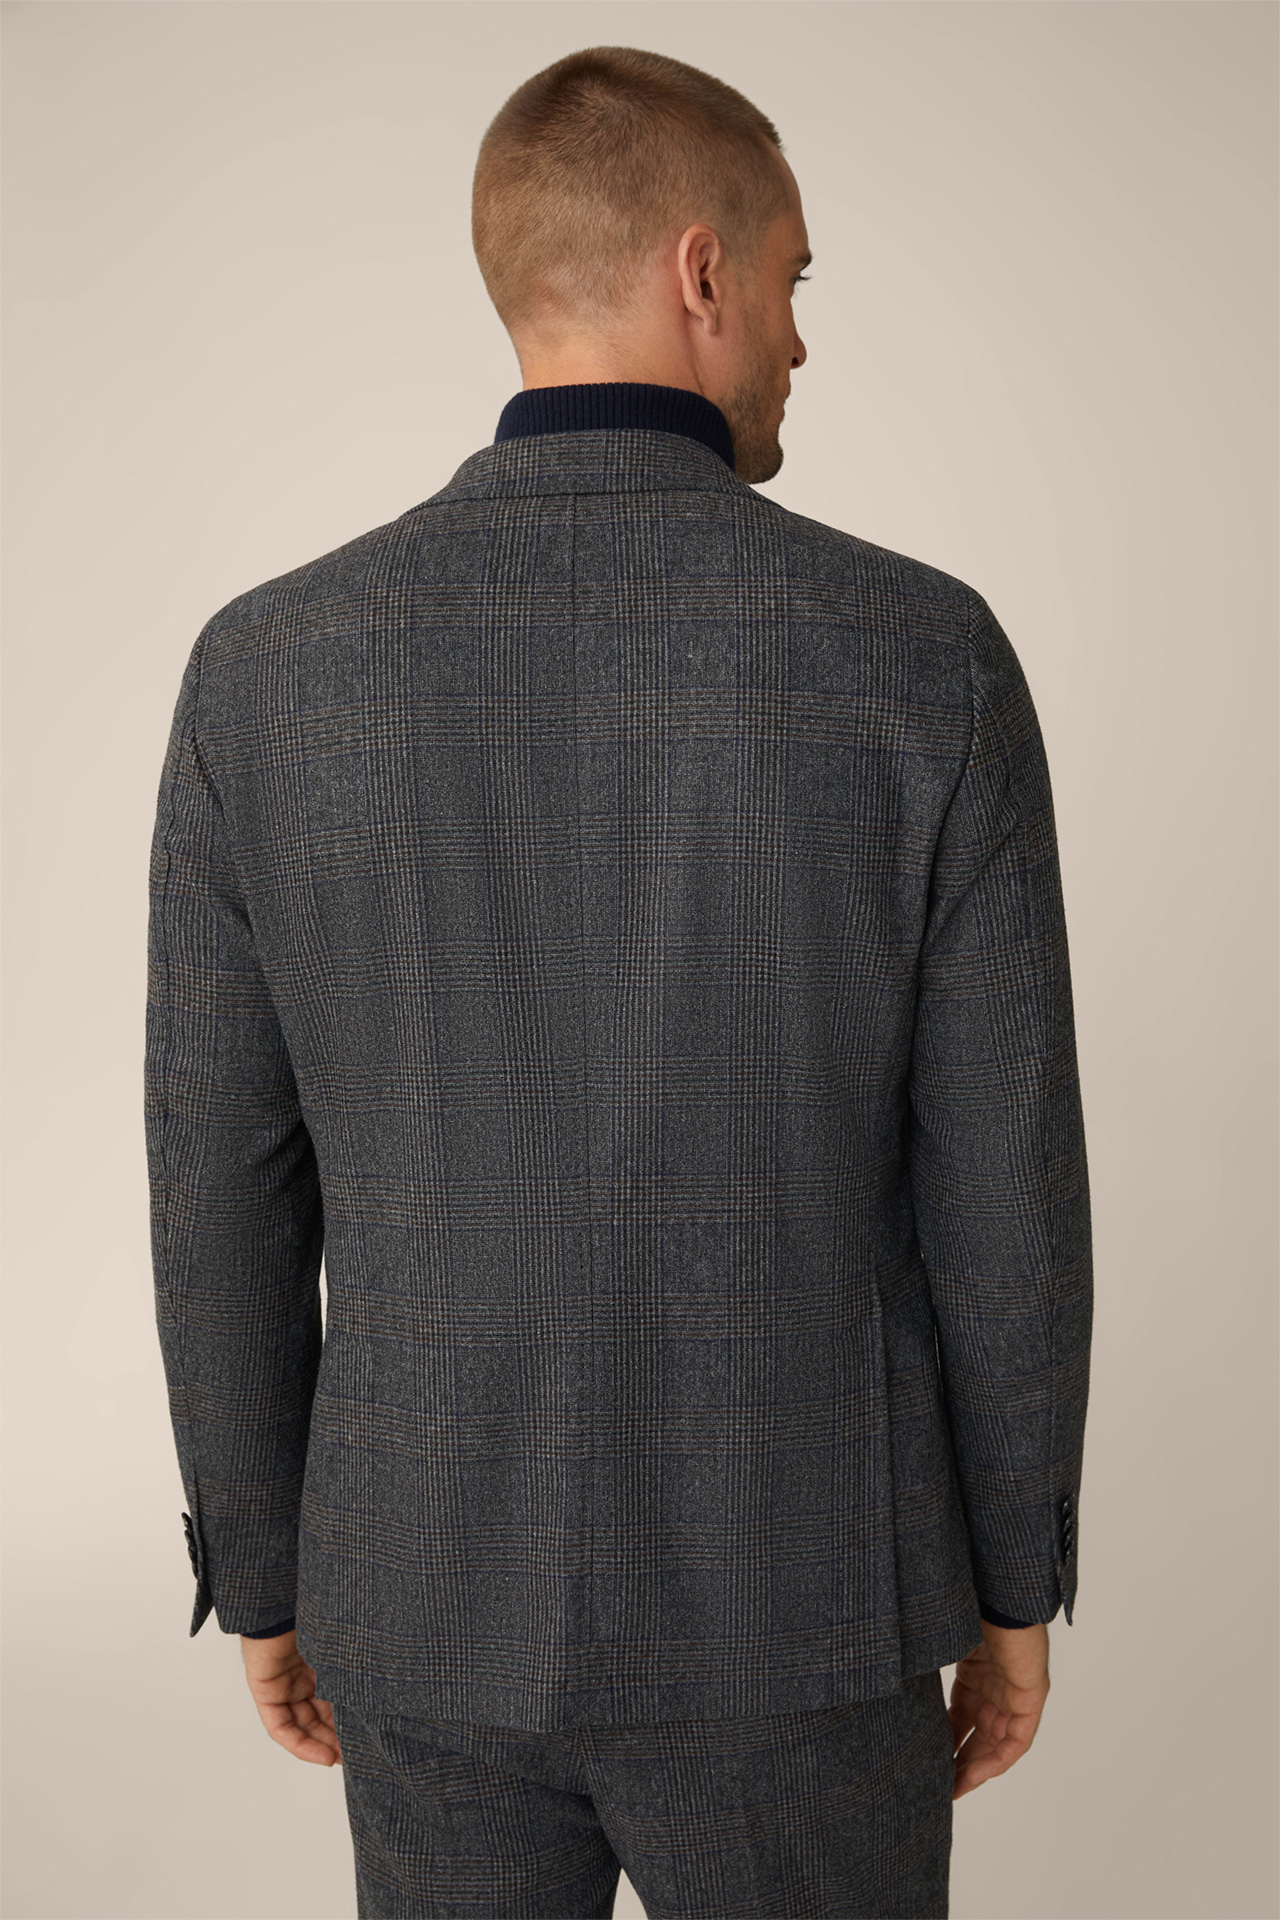 Veste de costume en laine mélangée à carreaux anthracite et bleu.